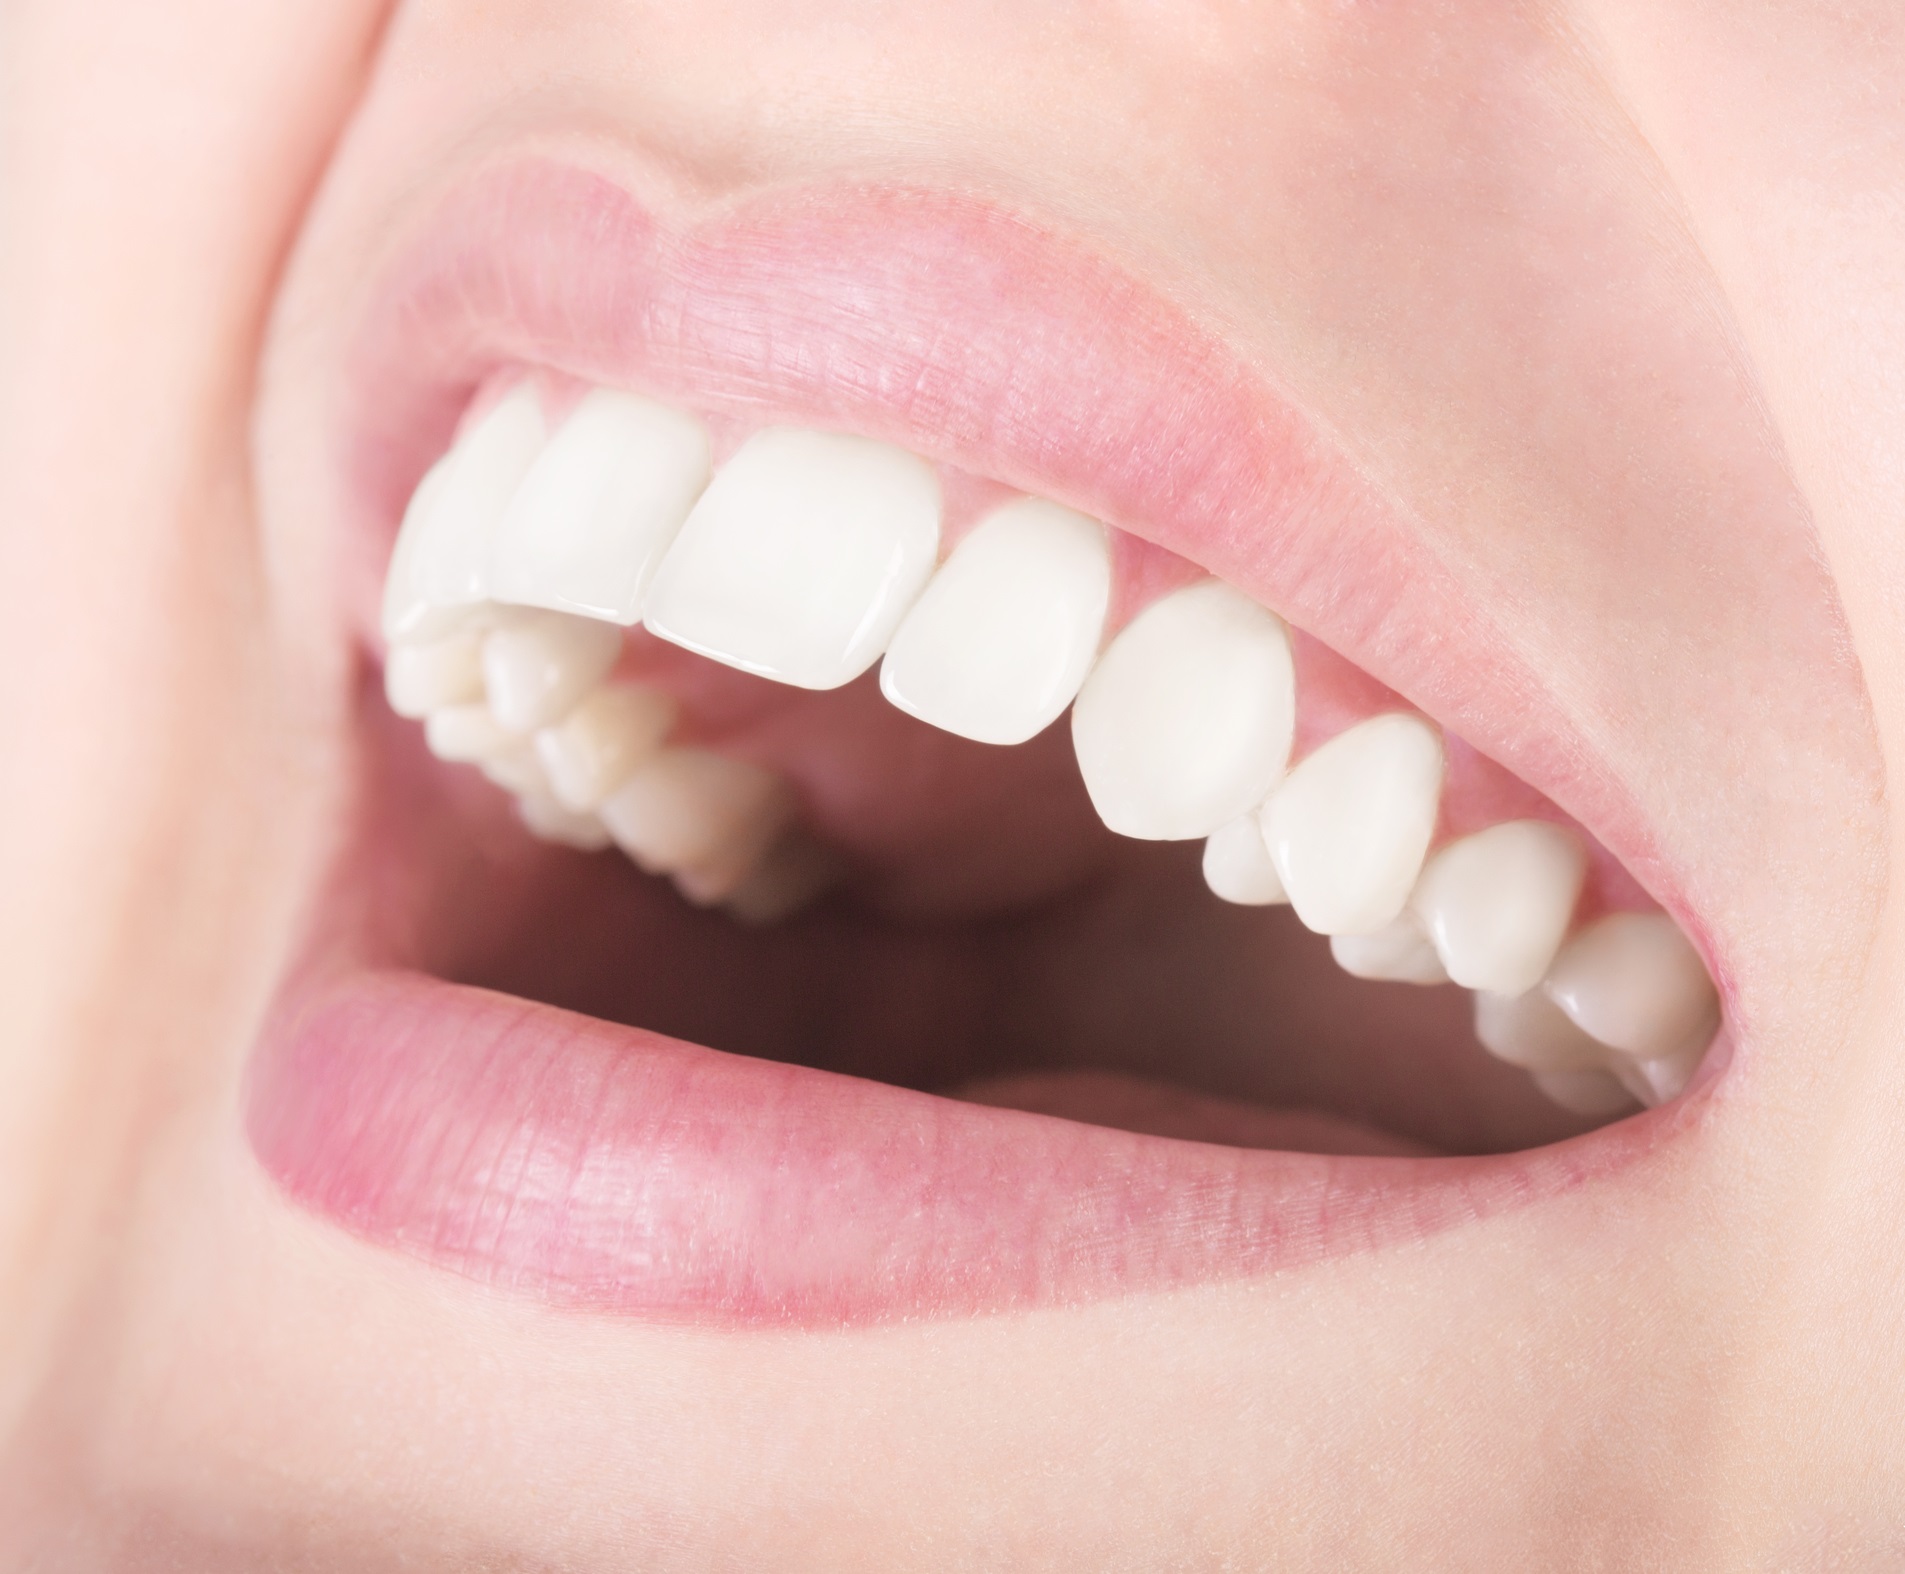 Грижете се за зъбите си<br />
<br />
Белите зъби се смятат за признак за добро здраве и младост. Тъмните, горещи и лепливи храни са най-големите причинители на петна по зъбите. Червеното вино, кафето и колата също оцветяват зъбите. За да запазите усмивката си бяла, просто избягвайте храните и напитките, от които зъбите потъмняват.